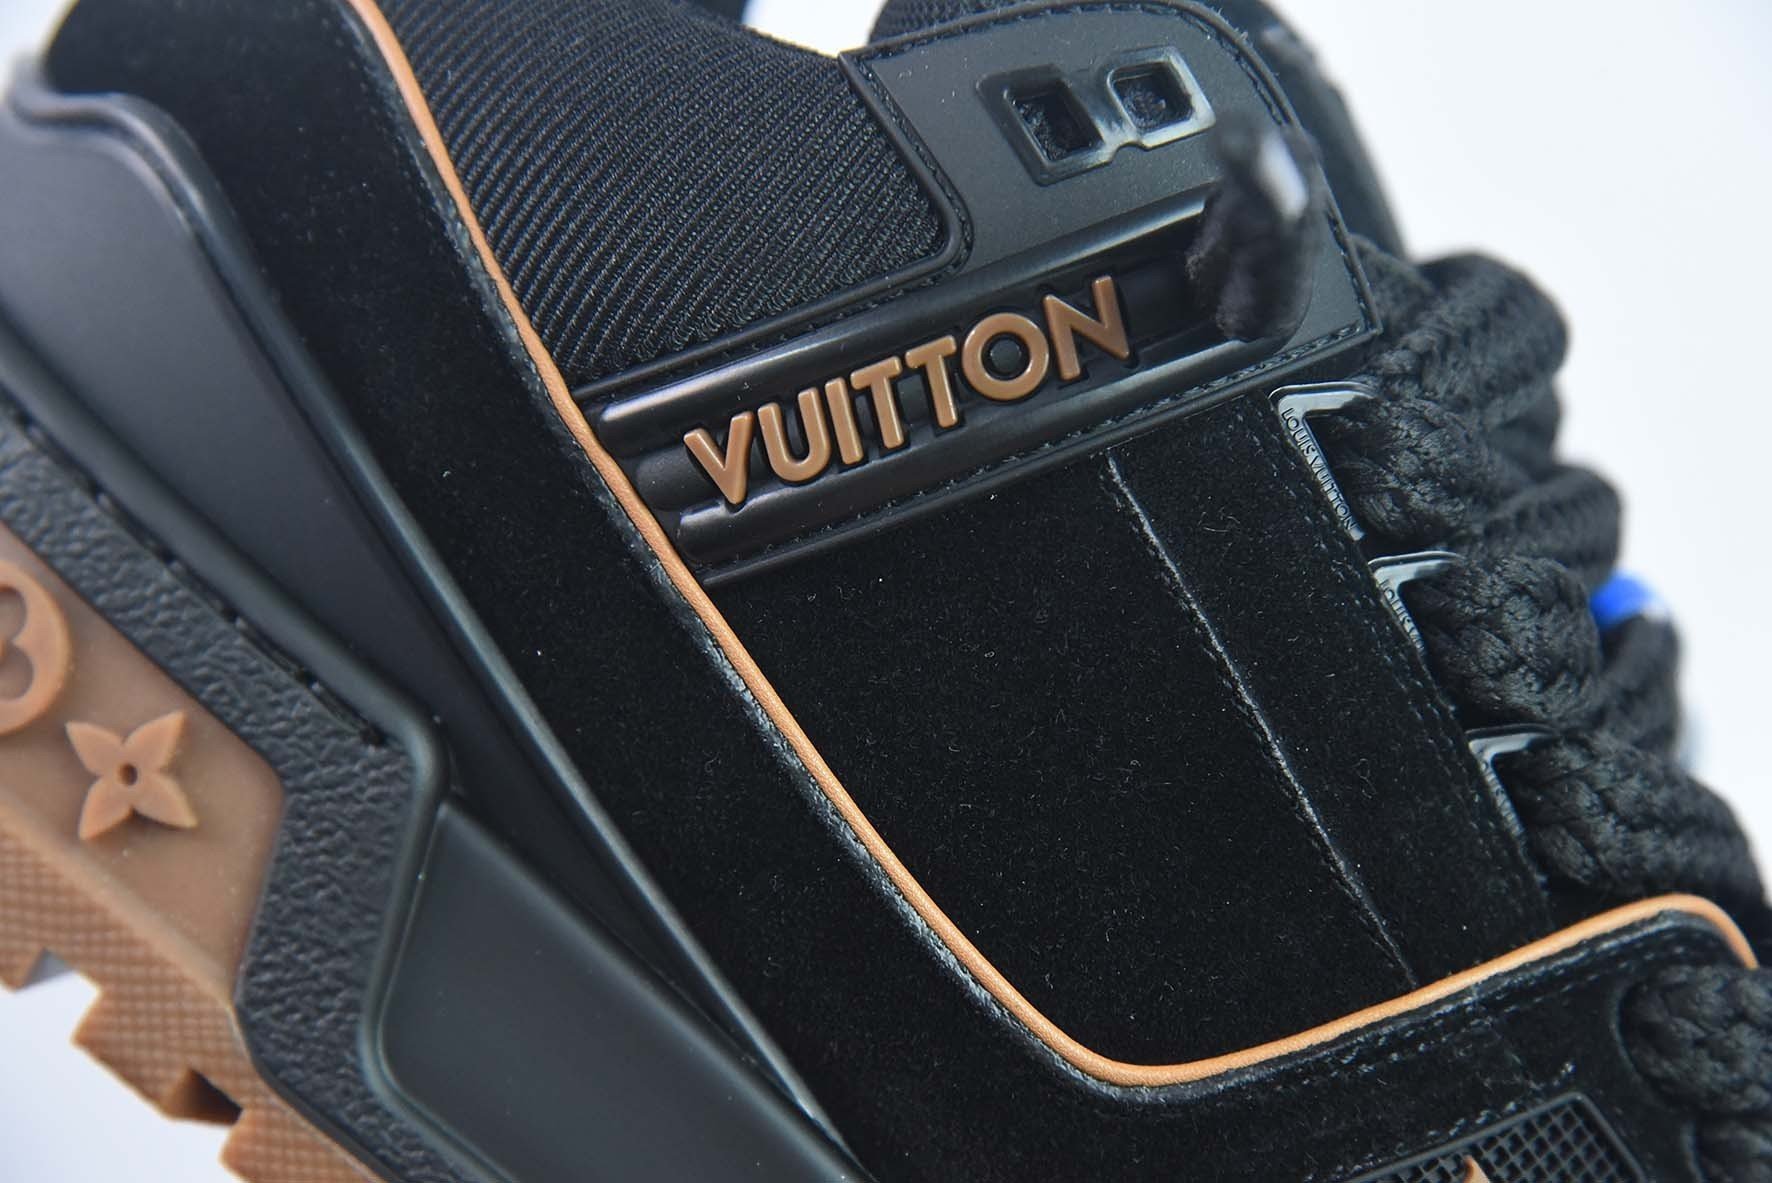 Giày Louis Vuitton Siêu Cấp Đen Nâu Size 35-44 MLII1V